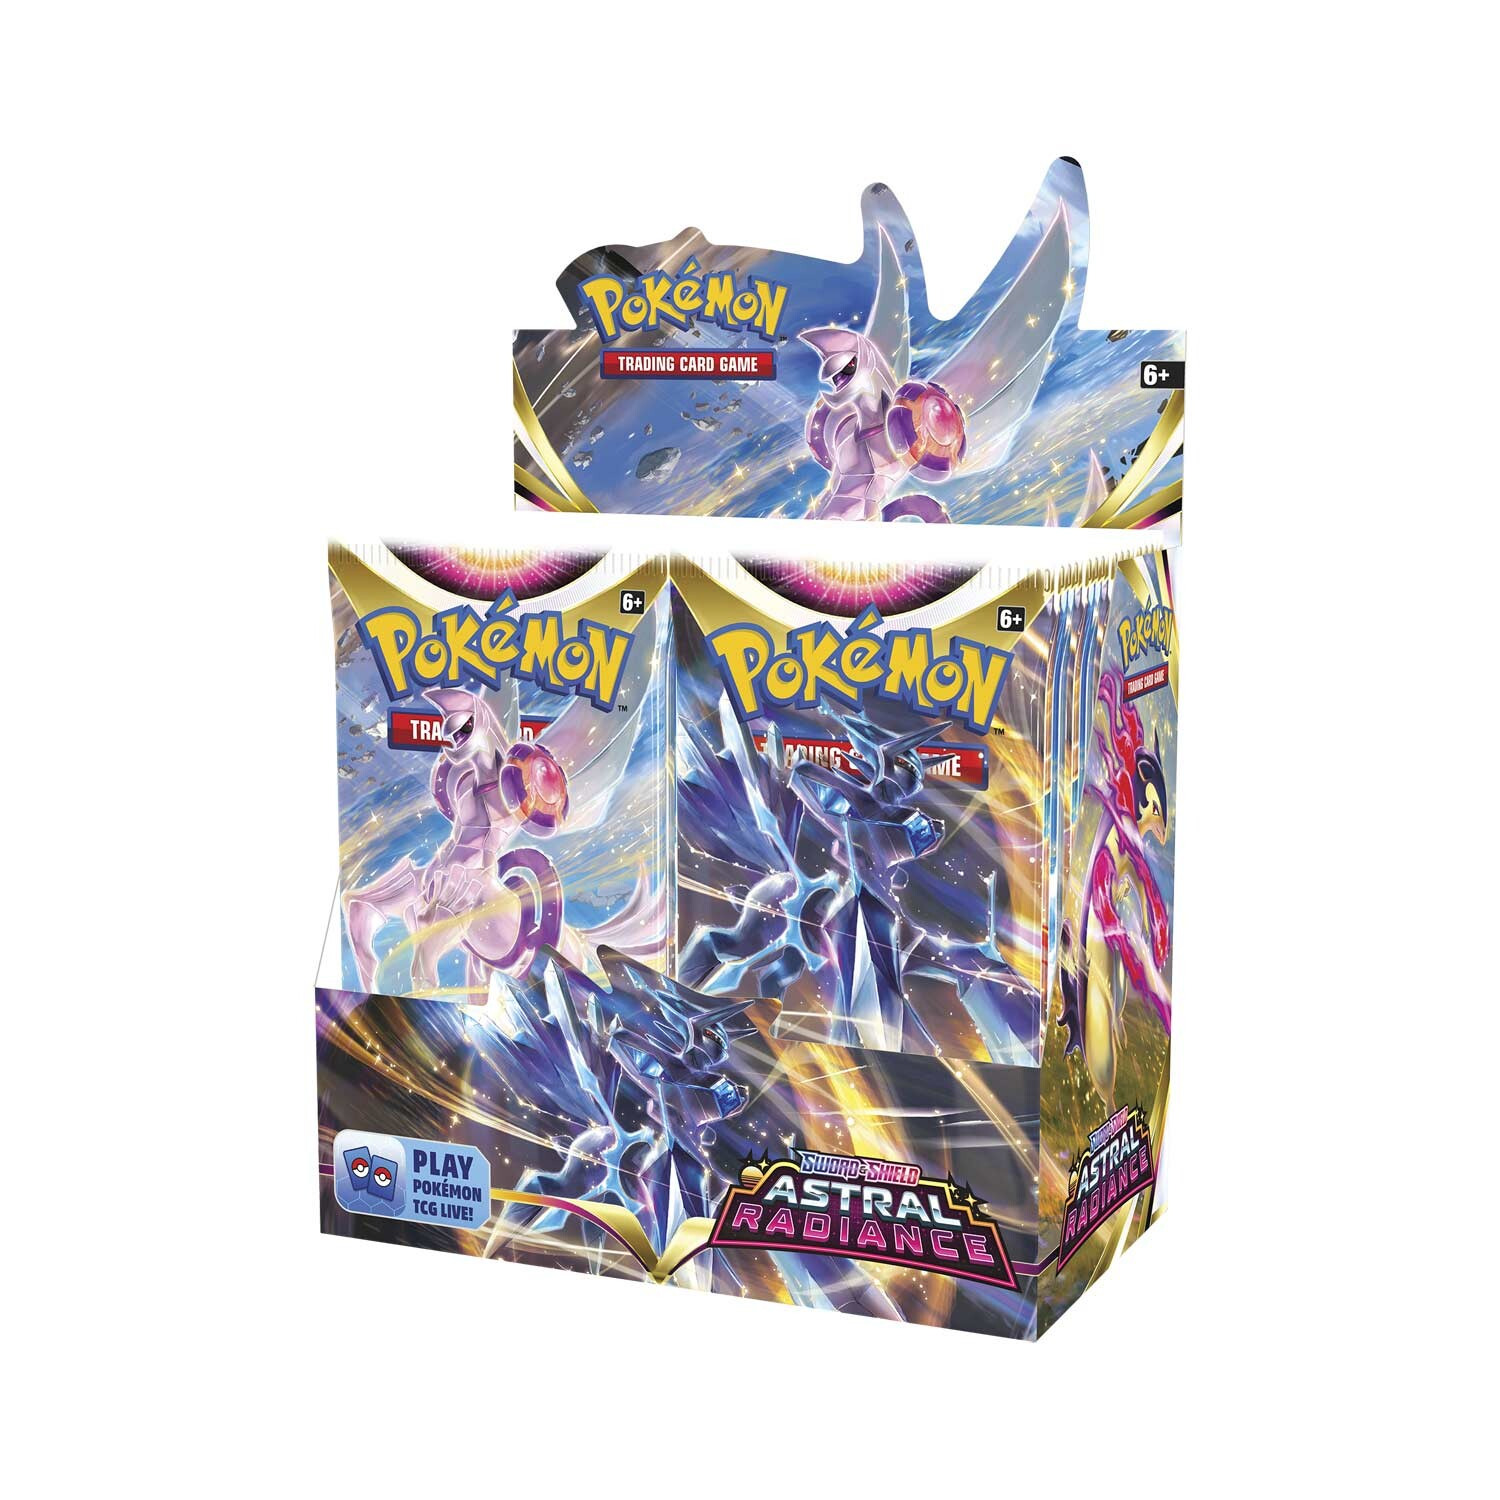 Pokemon TCG Gra Karciana: Sword & Shield Astral Radiance - booster box (36 boosterów)